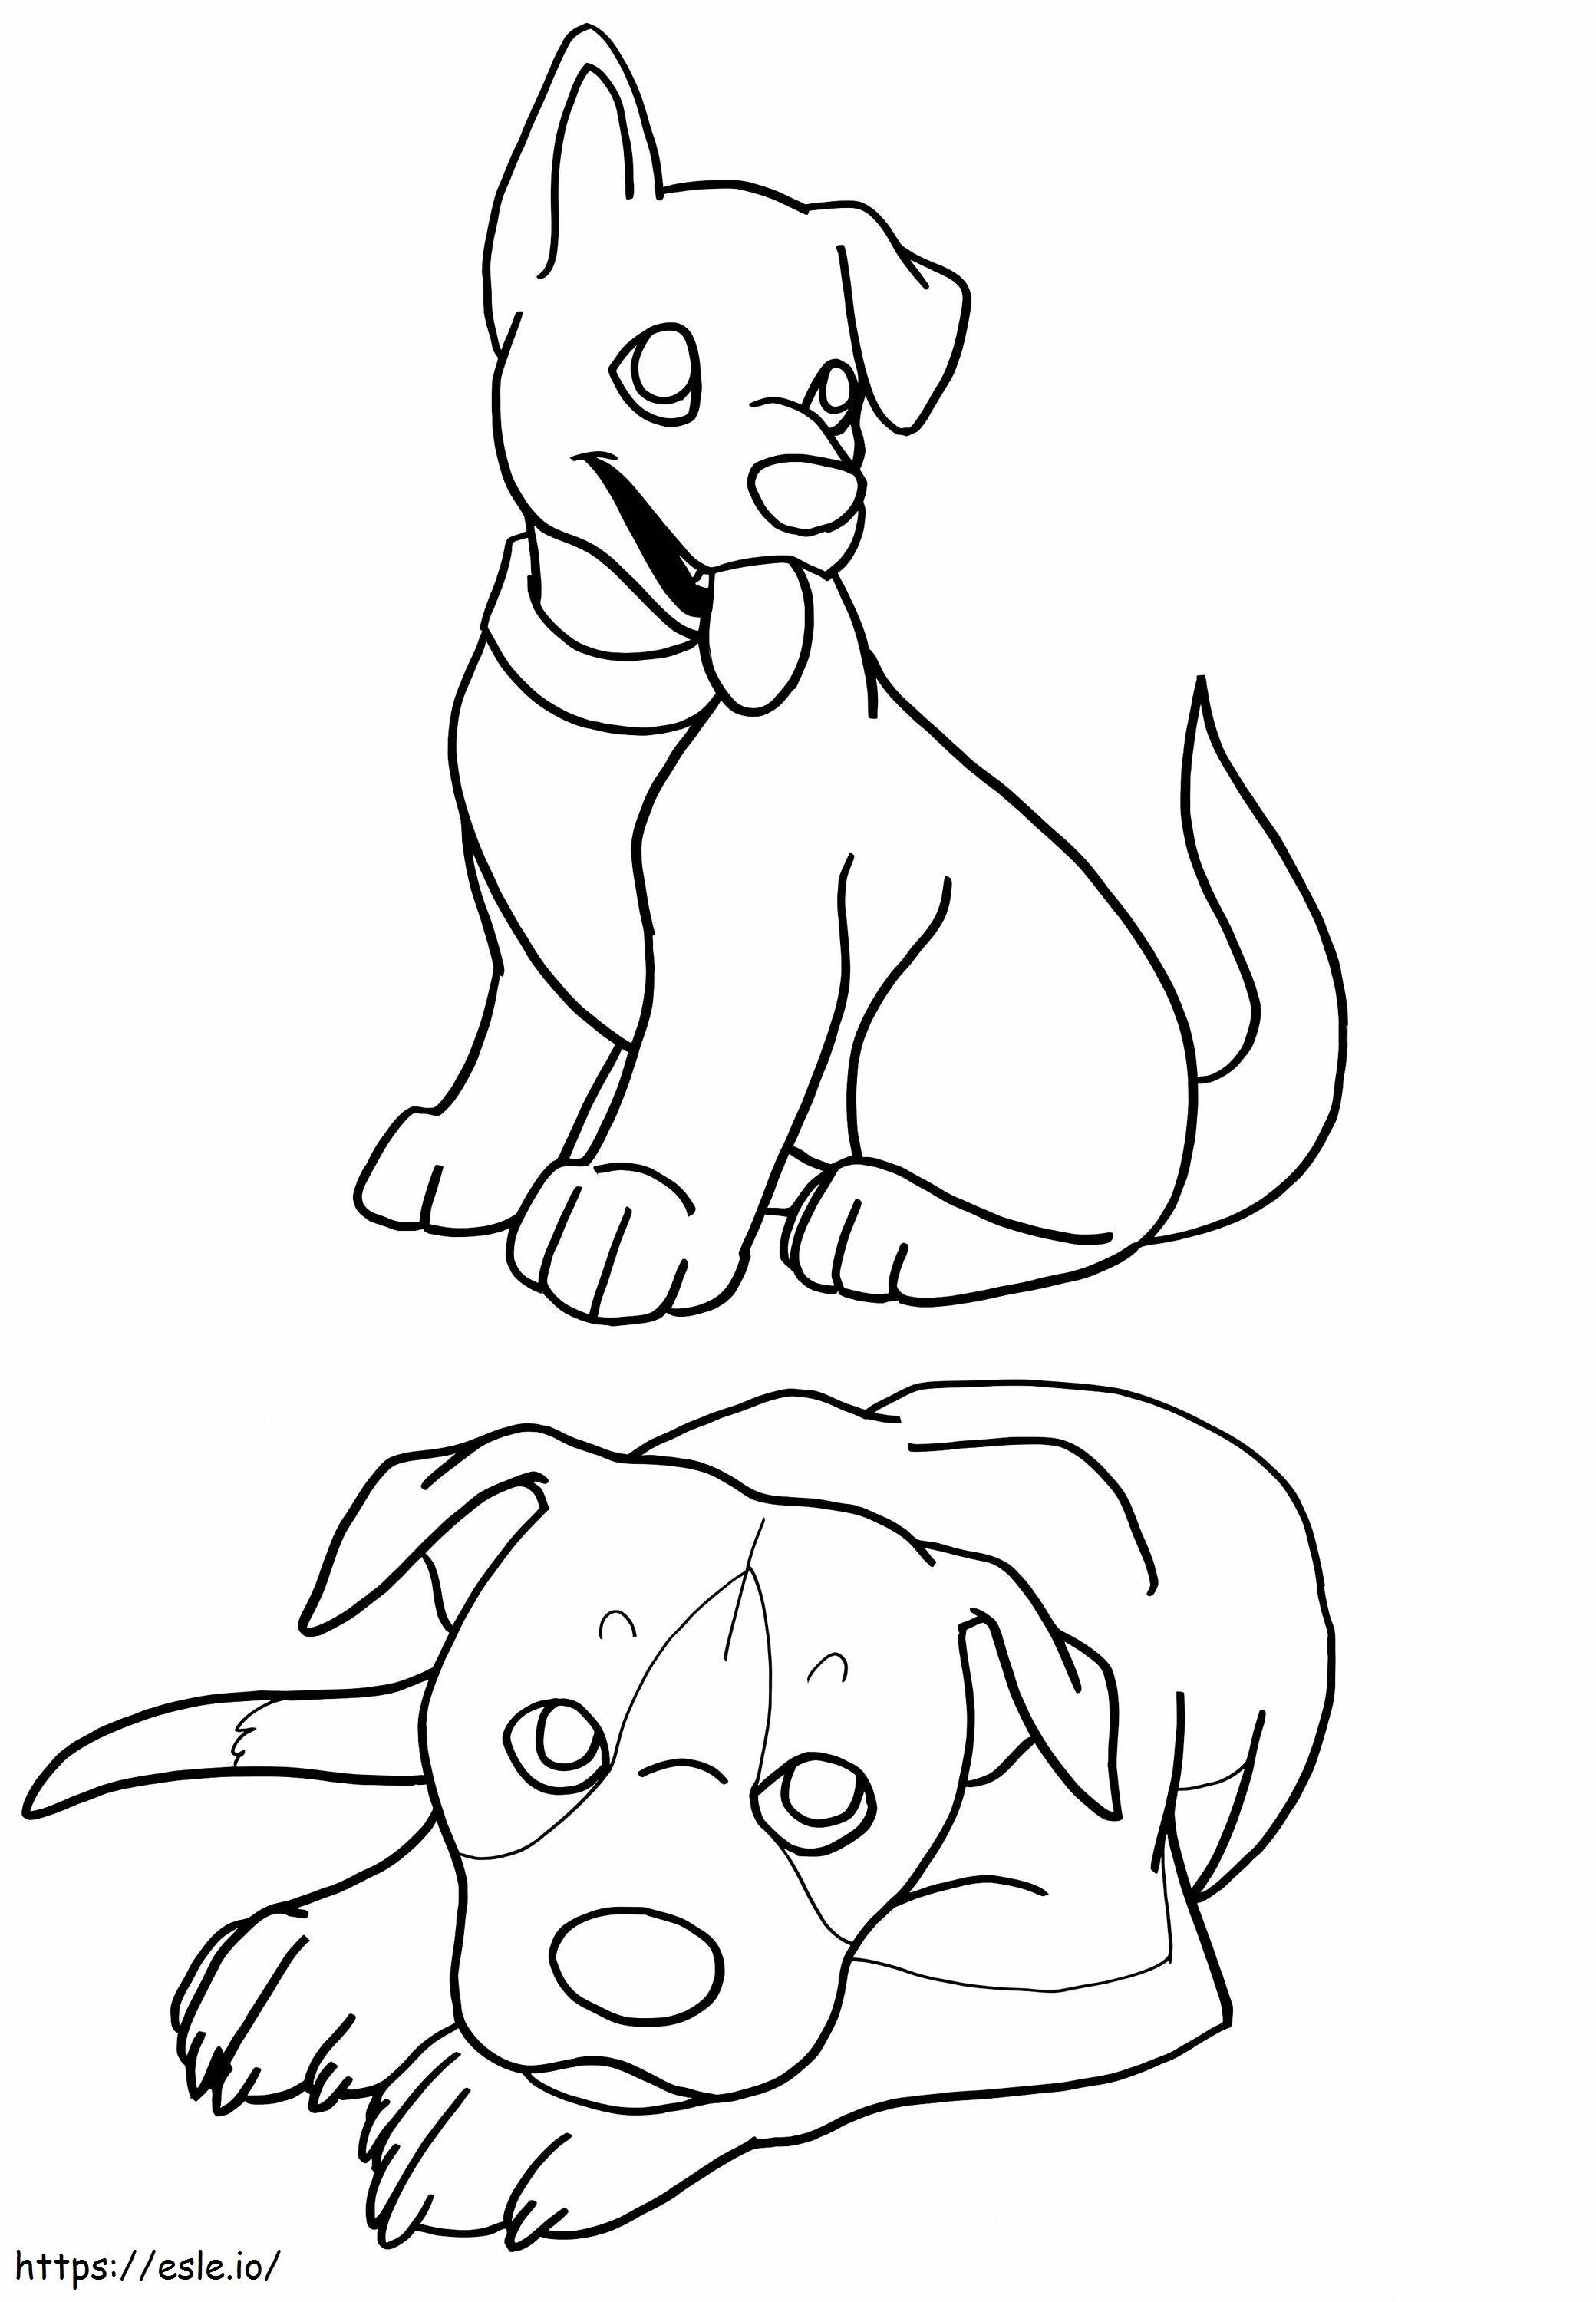 Dos Cachorros coloring page